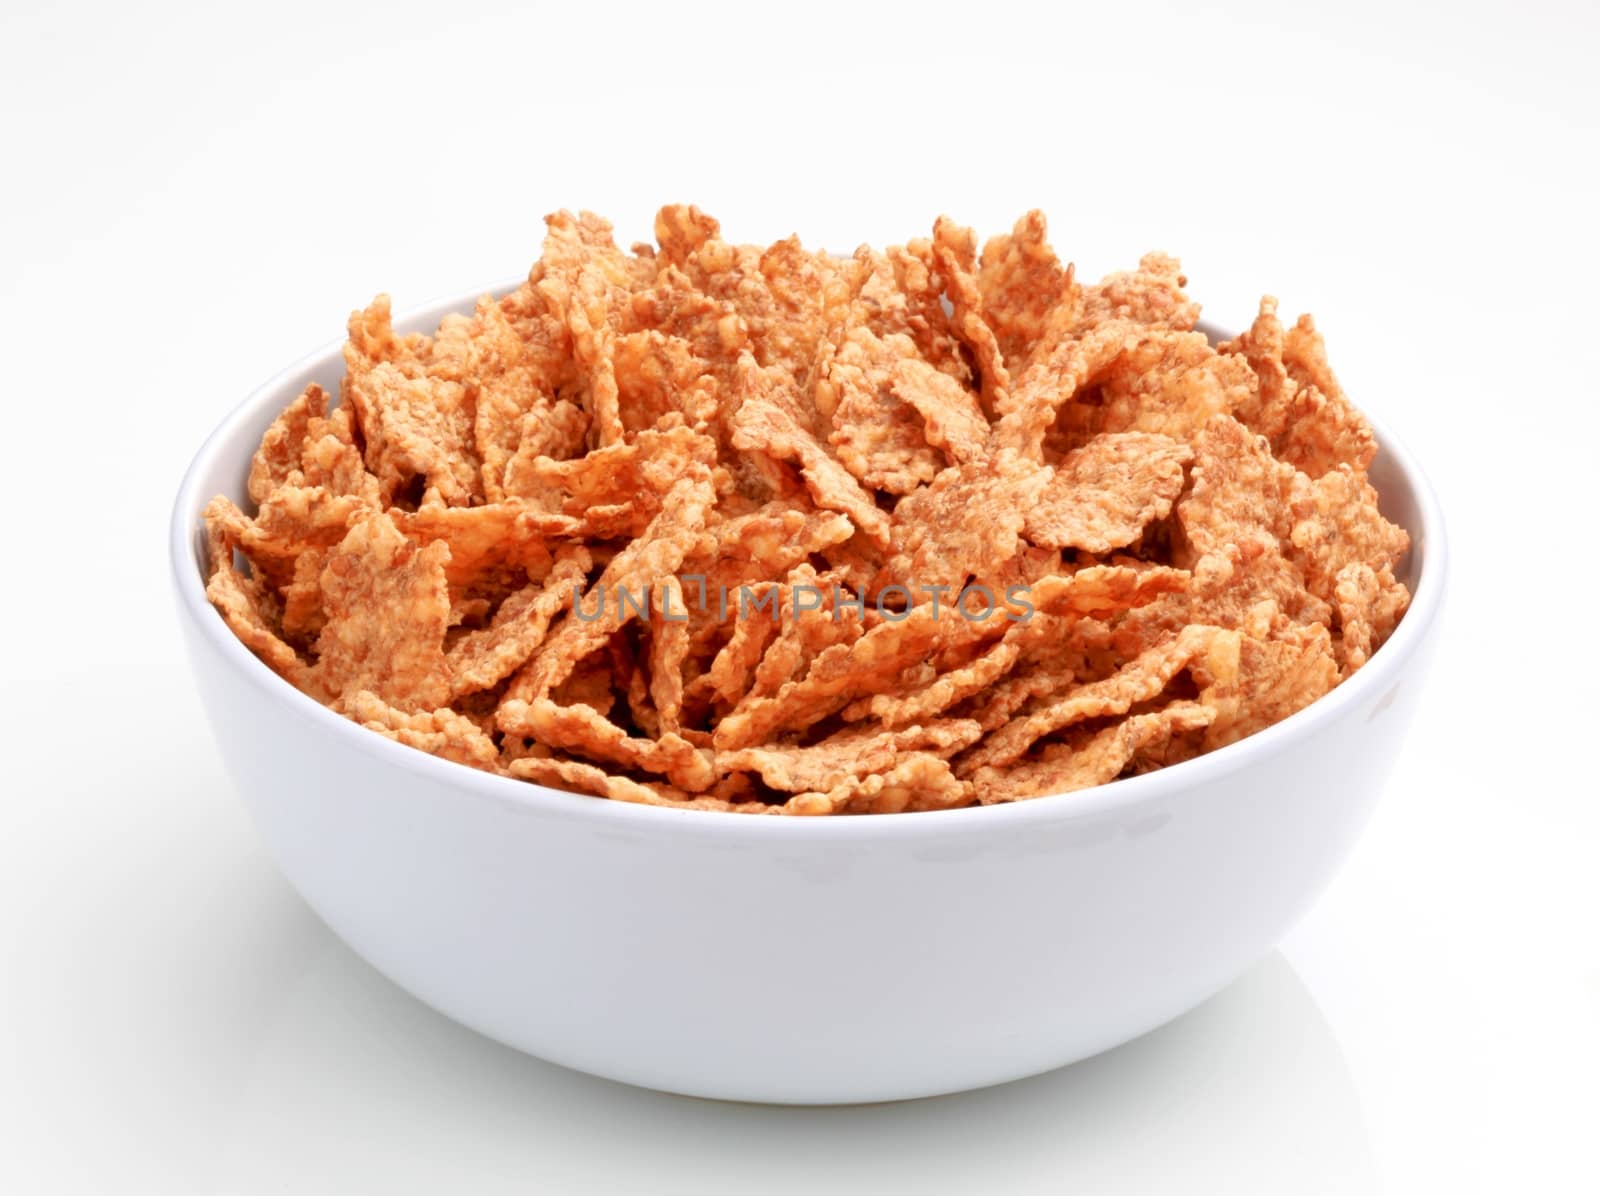 Whole grain breakfast cereal by Digifoodstock